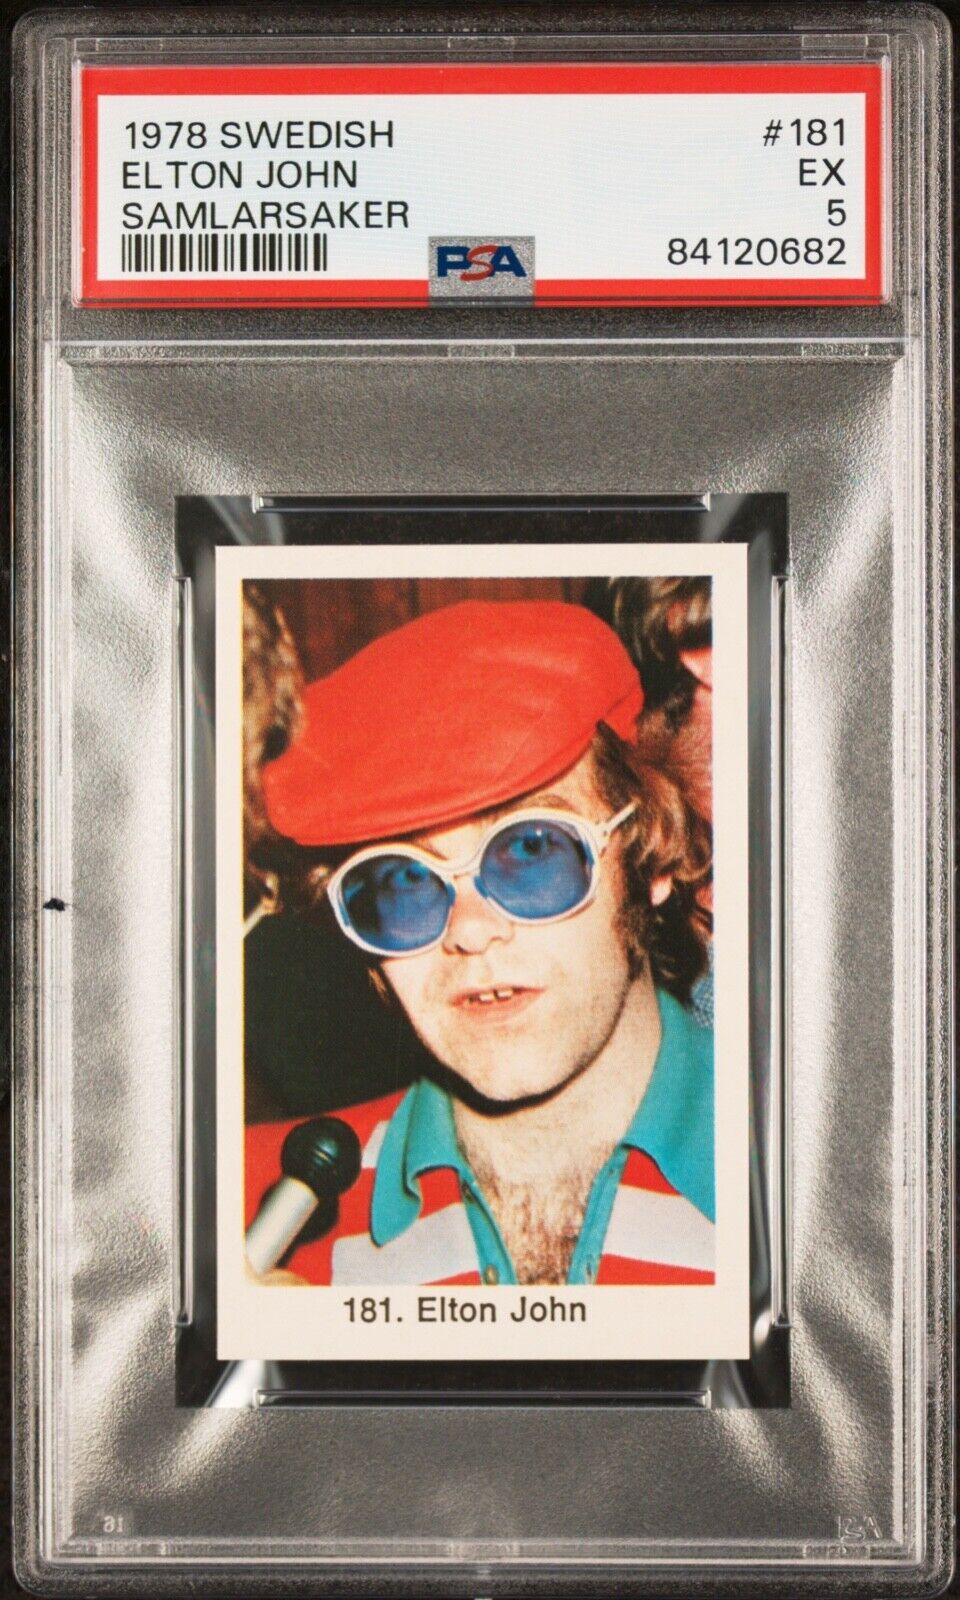 1978 Swedish #181 Elton John Samlarksaker PSA 5 **Throwback Rocketman**